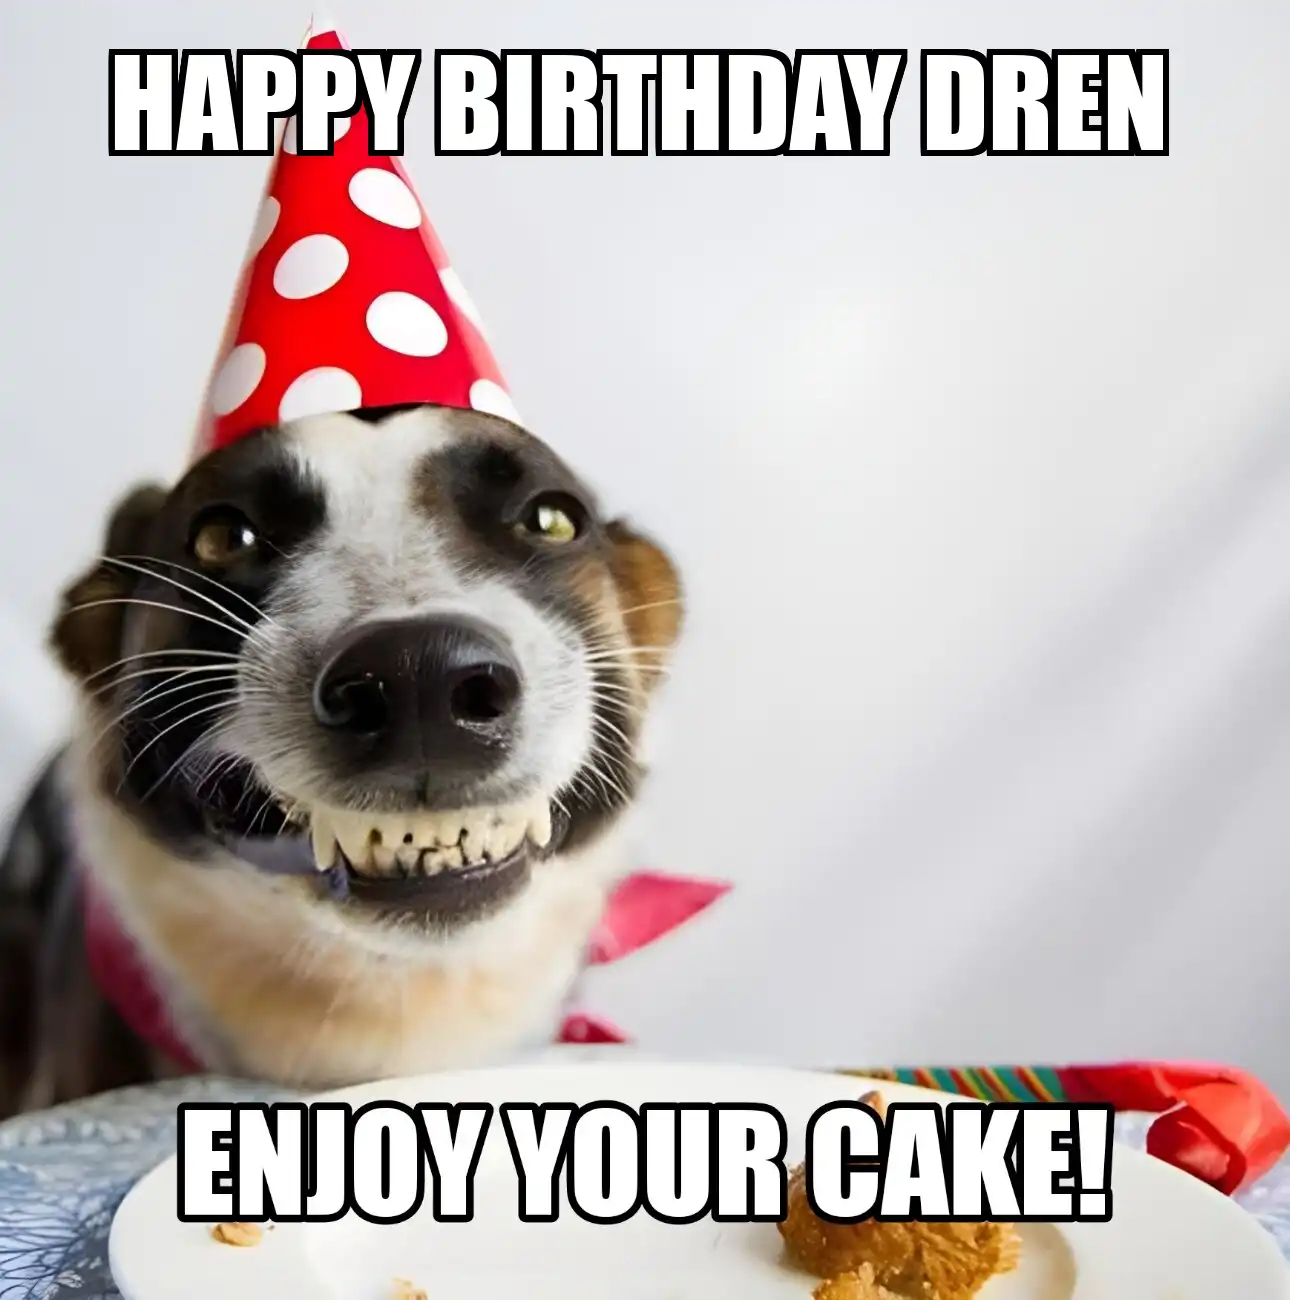 Happy Birthday Dren Enjoy Your Cake Dog Meme